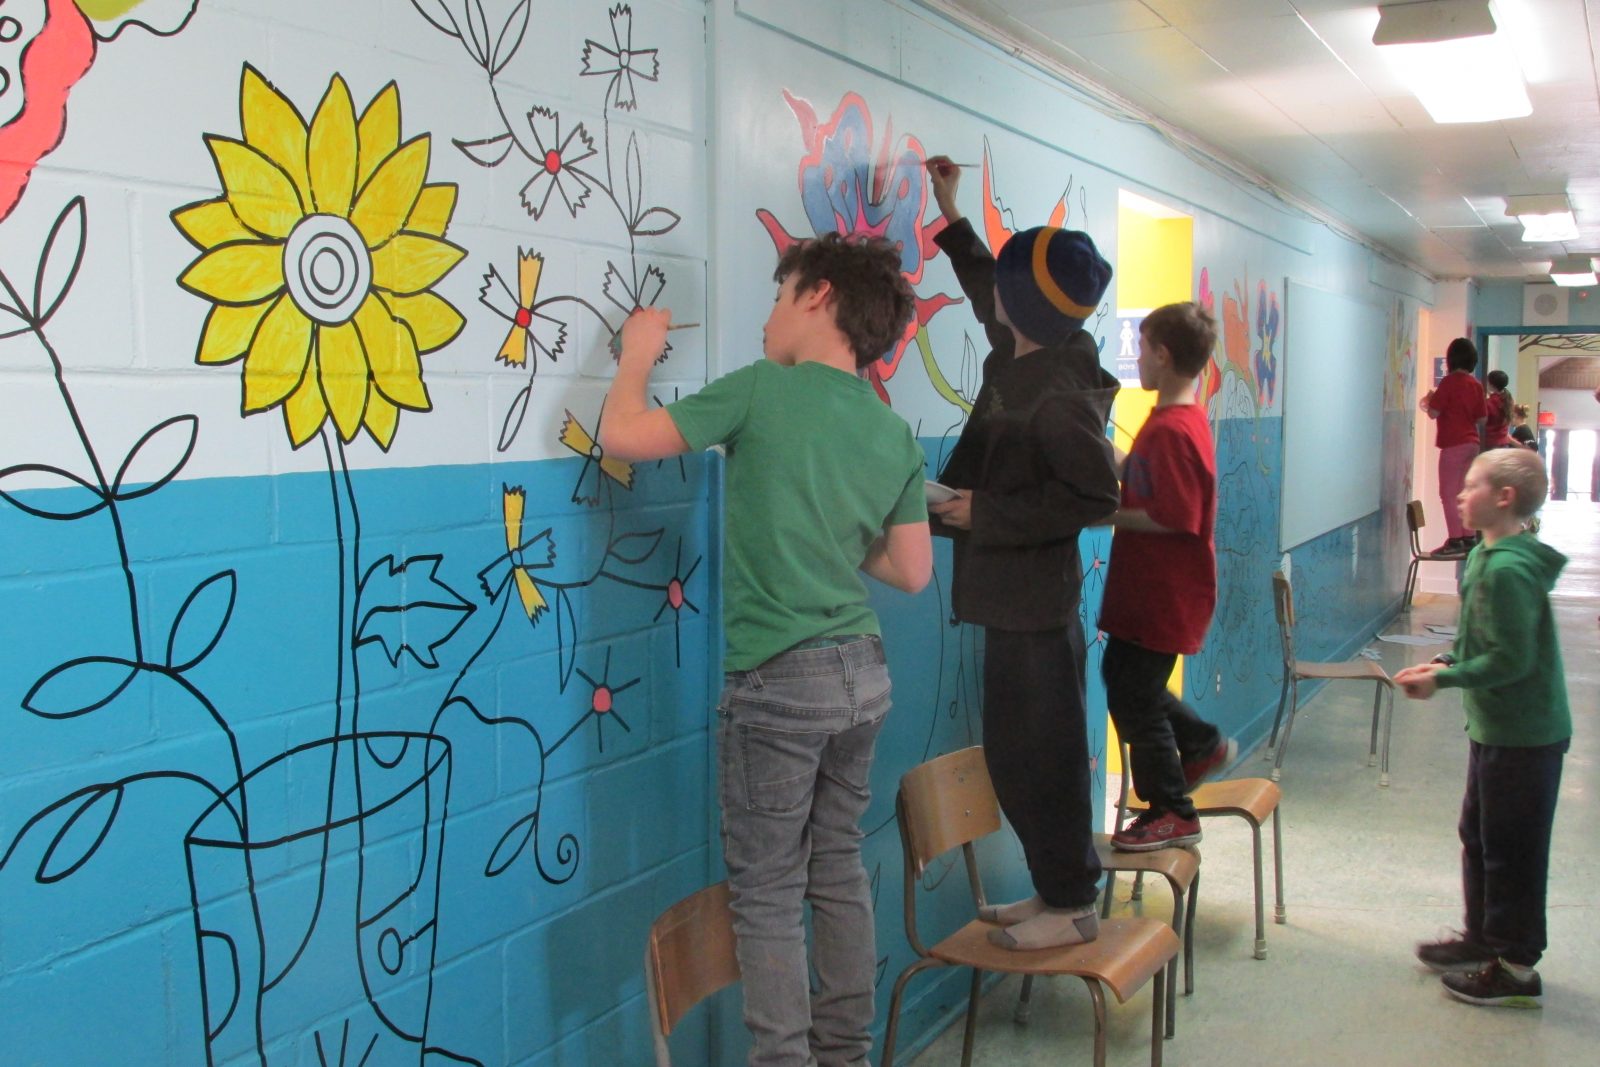 Heroes’ students create mural depicting their heroes